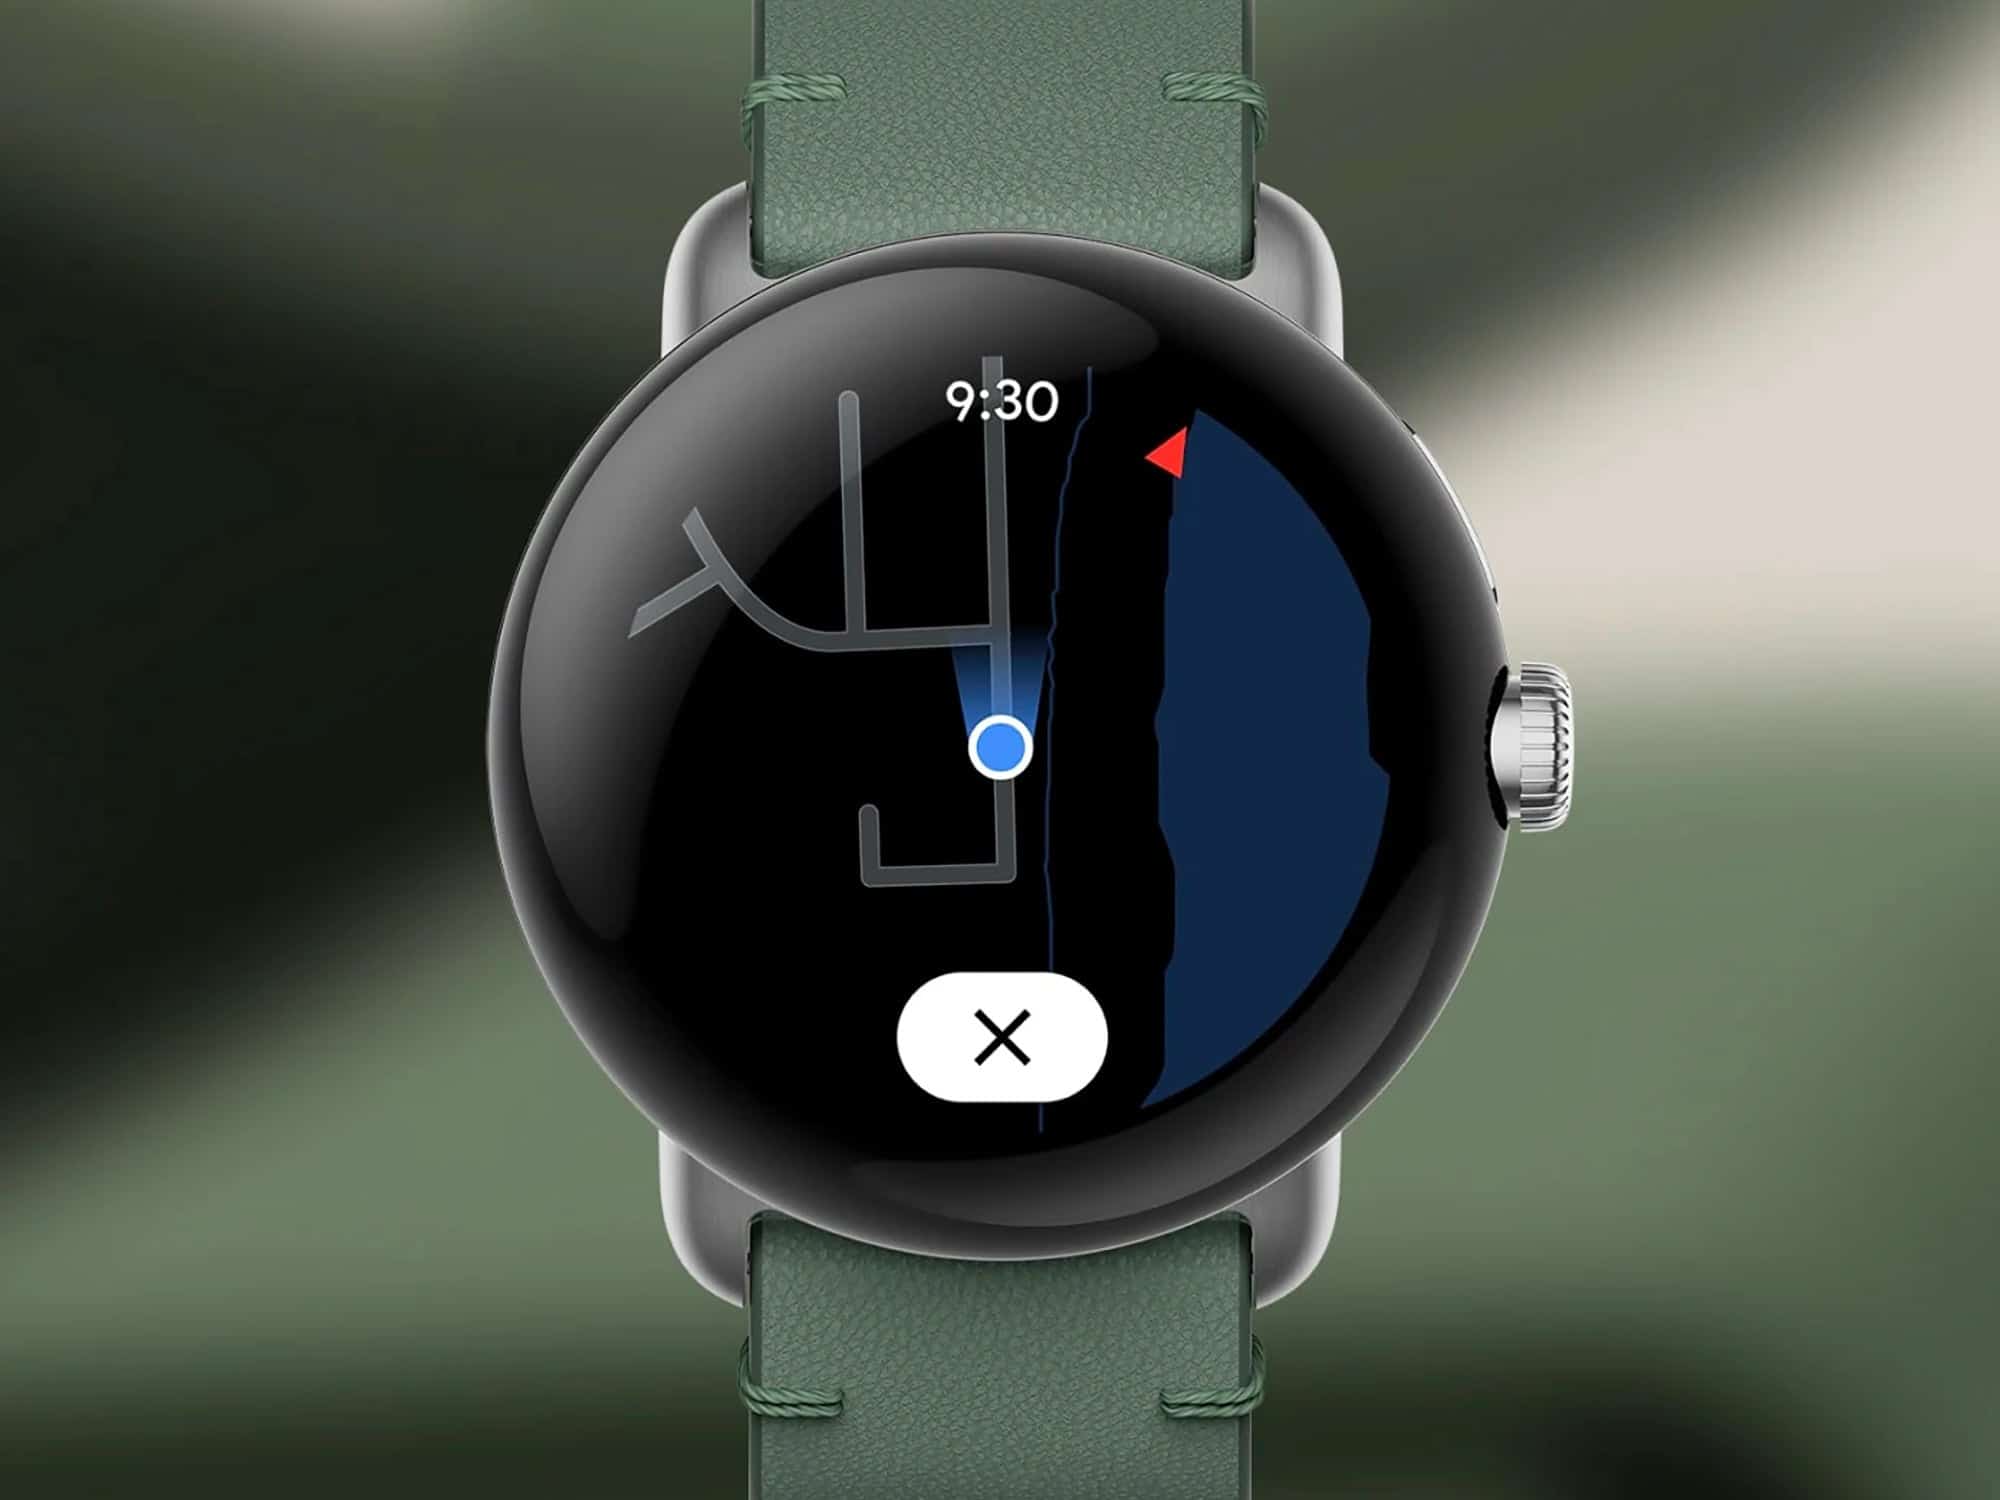 ساعة بيكسل (Pixel) تعرض شاشة الملاحة في تطبيق جوجل مابس (Google Maps)